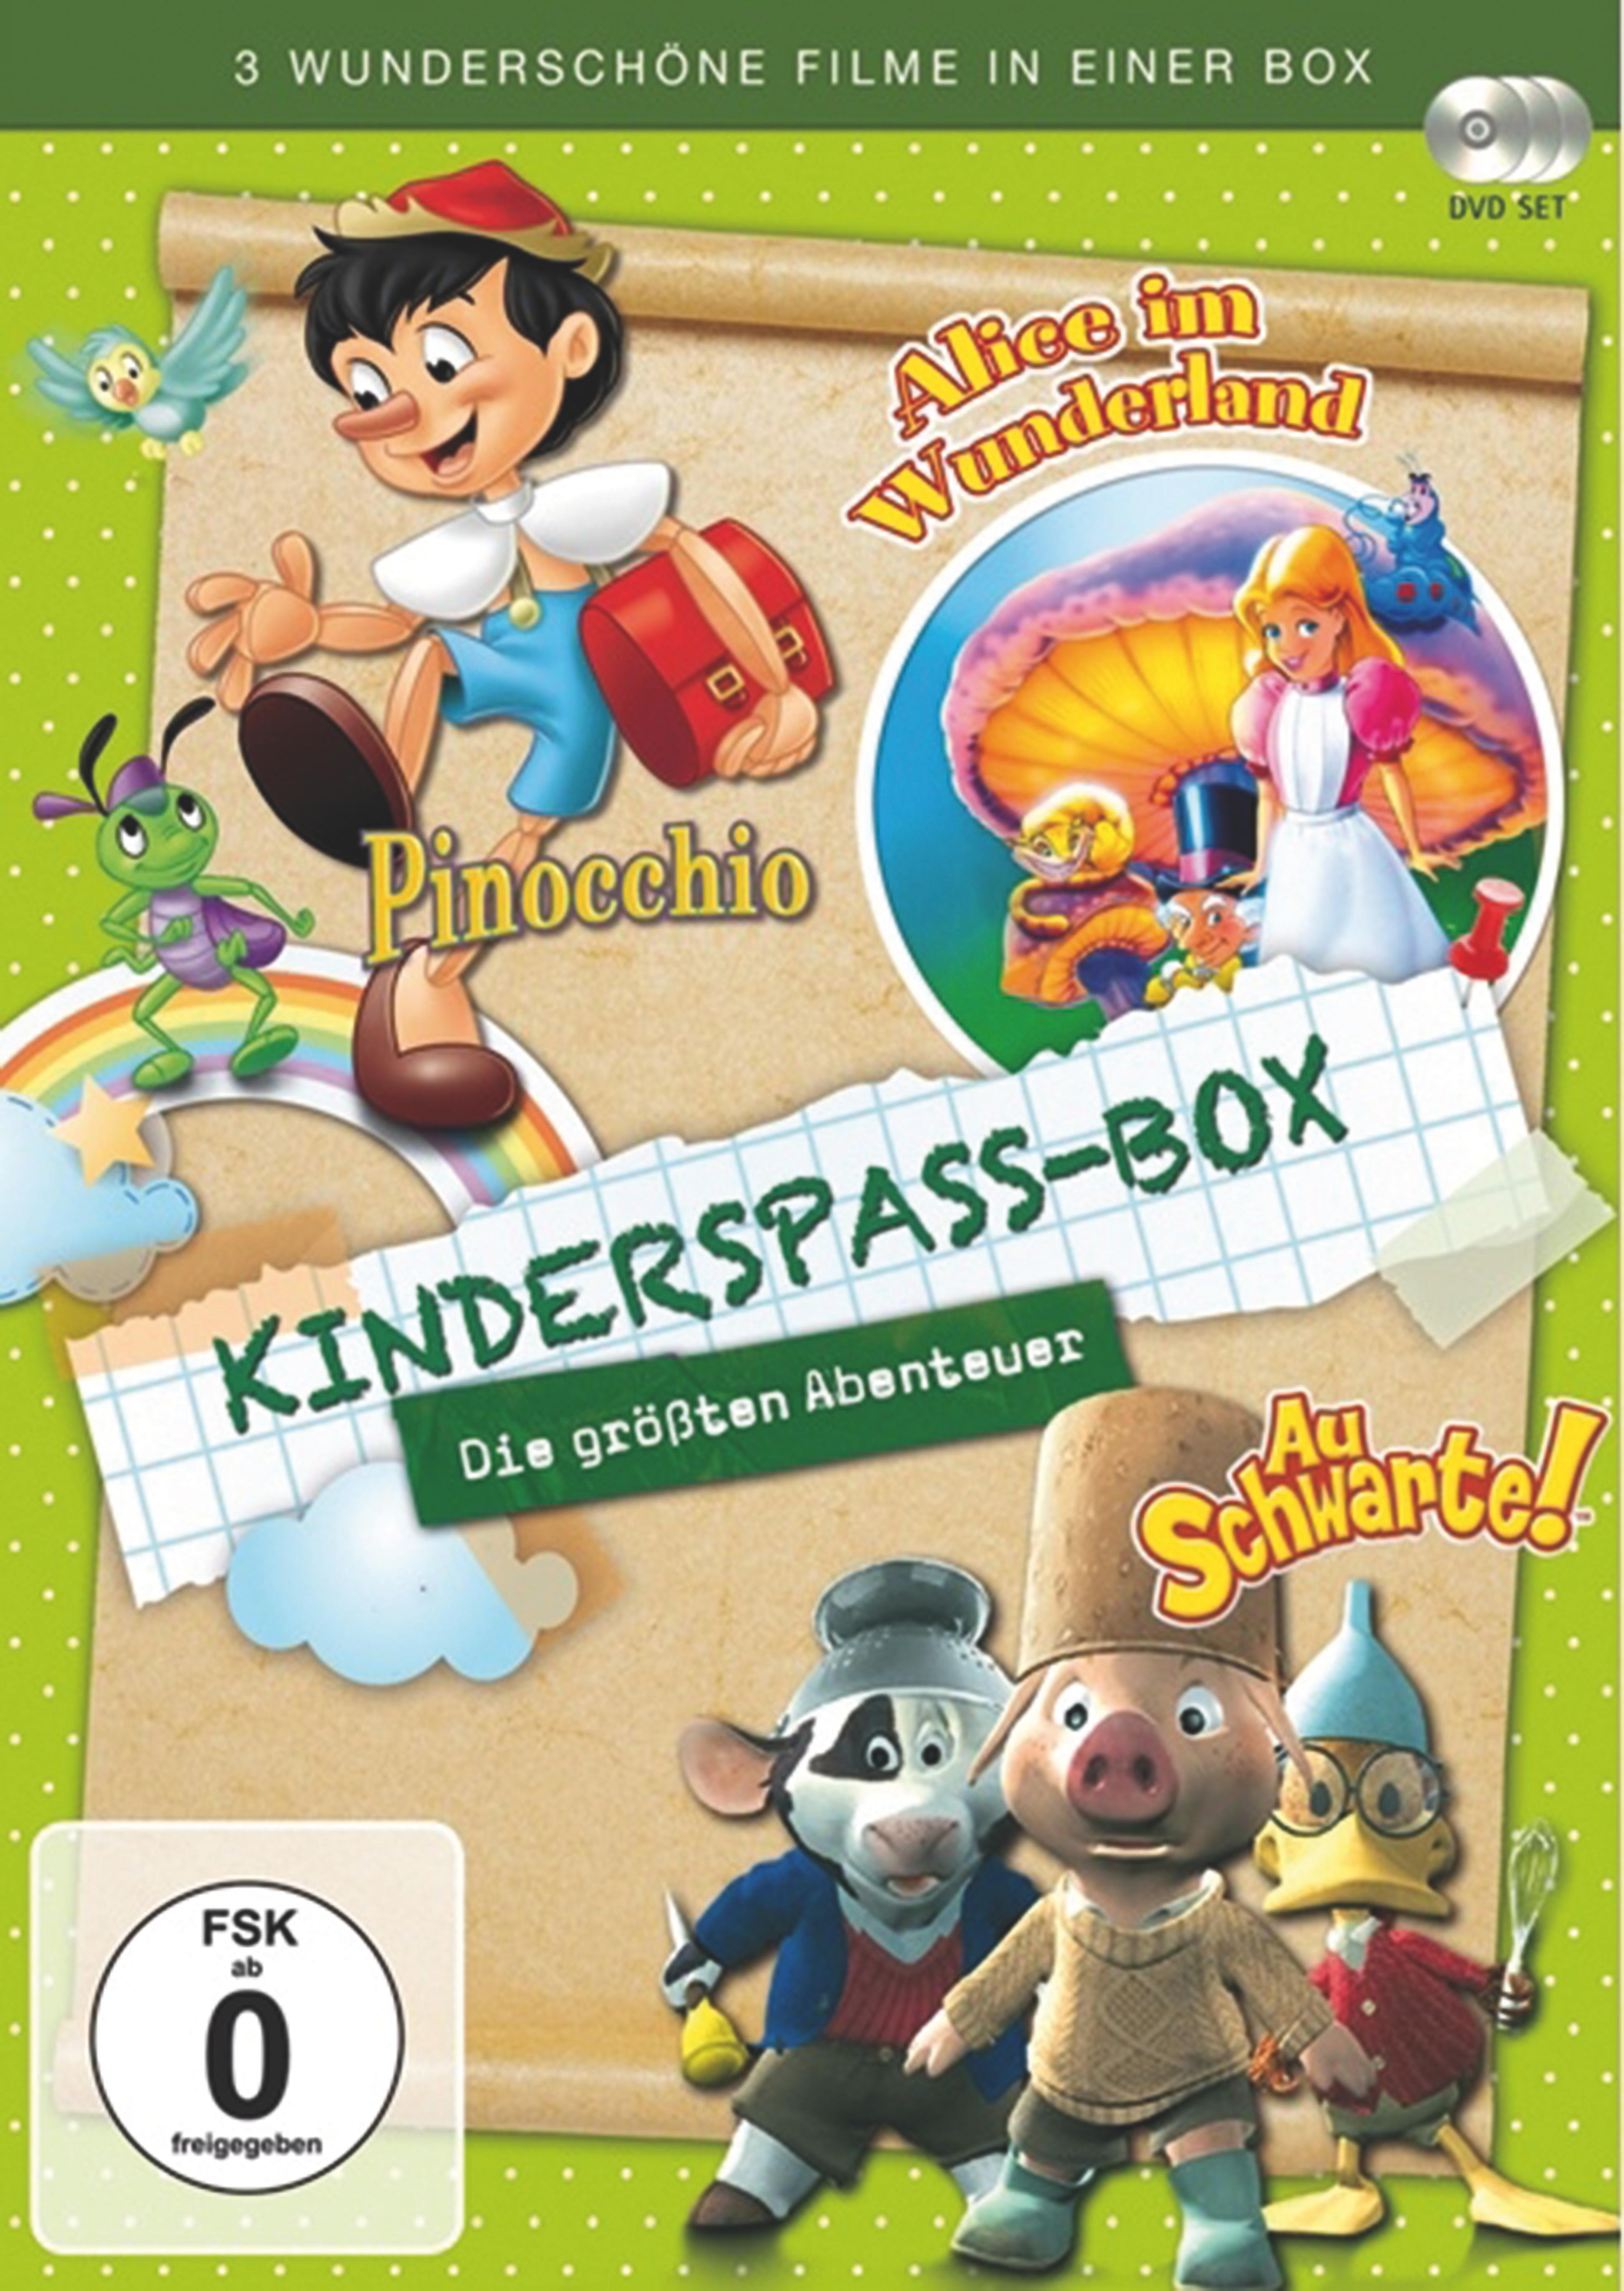 Abenteuer DVD Box - größten Kinderspass Die